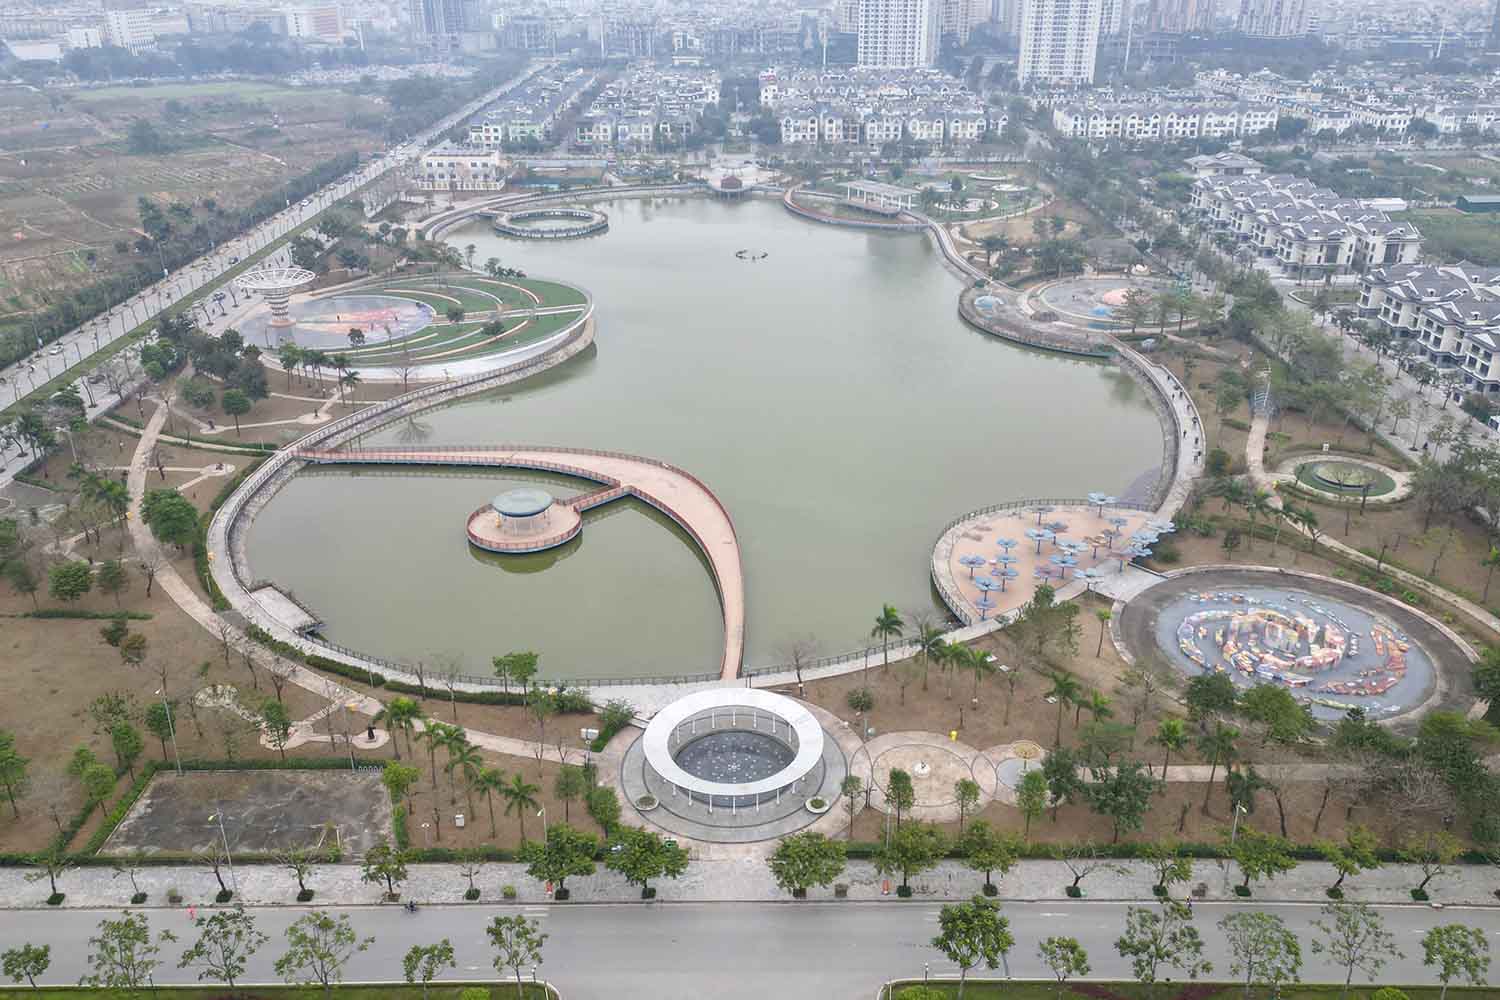 Công viên Thiên văn học được xây dựng trong khu đô thị Dương Nội, quận Hà Đông. Công trình khởi công năm 2017, hoàn thành sau 3 năm. Ảnh: Hữu Chánh